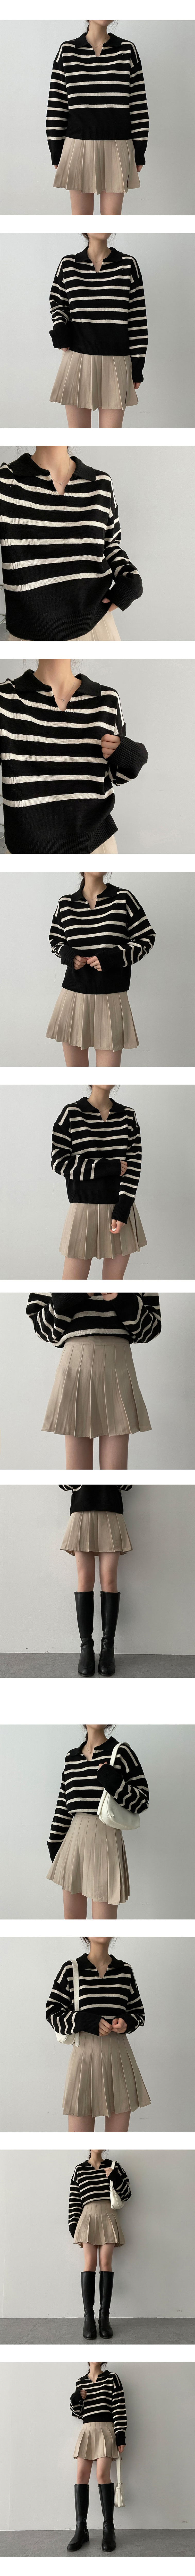 ルーステニススカート / loose tennis skirt